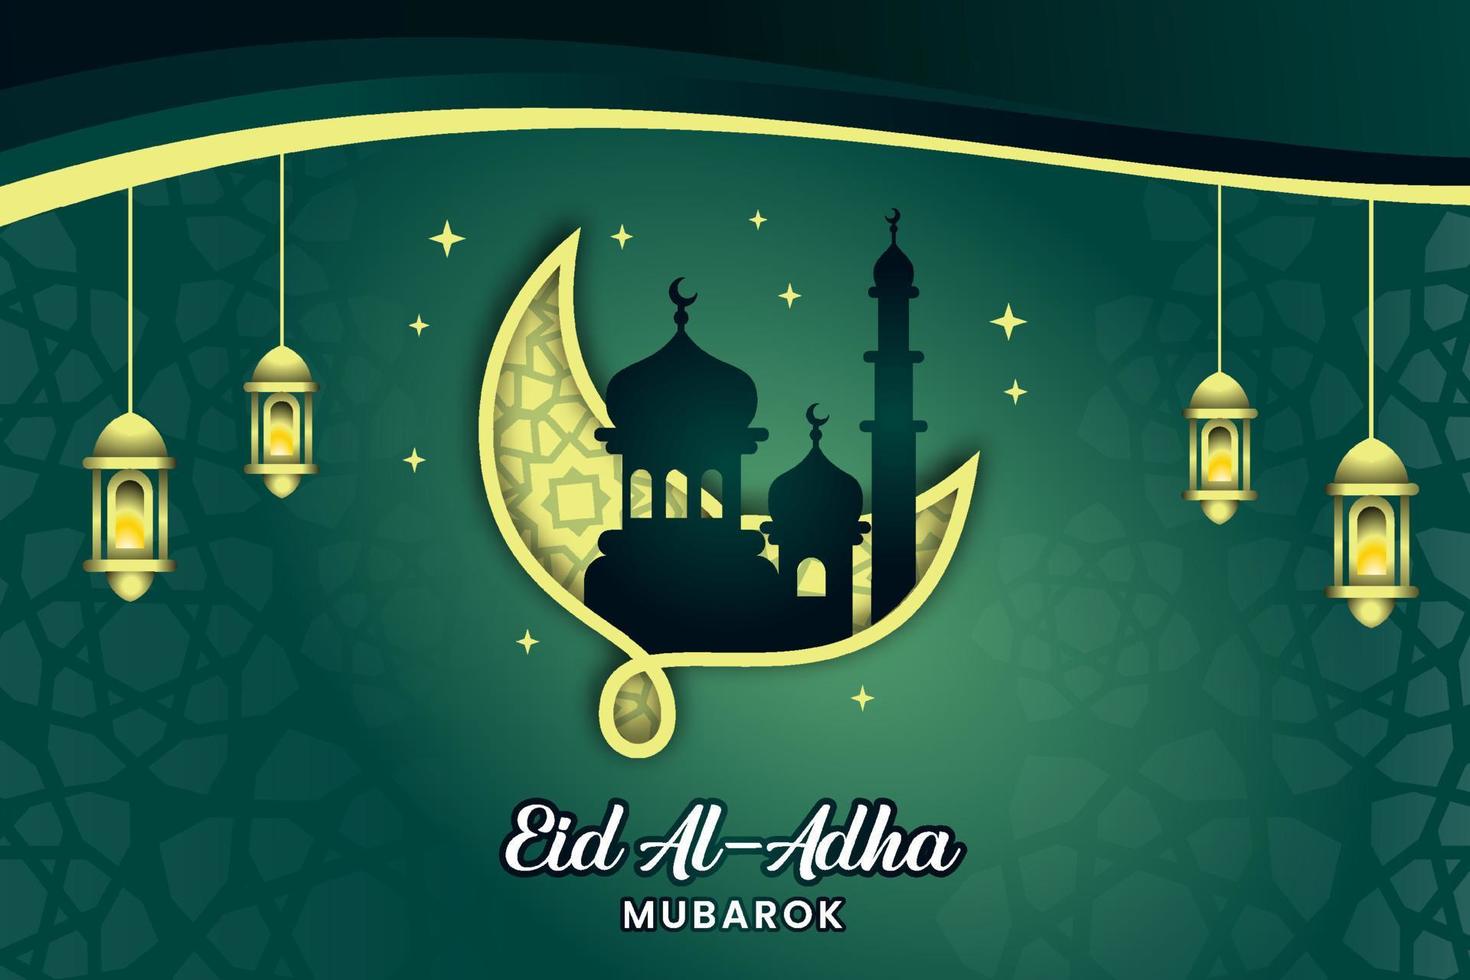 Chào đón Lễ Eid al-Adha với trái tim tràn đầy niềm vui và hy vọng! Lễ Eid al-Adha là một dịp đặc biệt để gia đình và bạn bè cùng vui đón, chia sẻ niềm hạnh phúc và rước nhiều điều may mắn. Hãy xem hình ảnh liên quan để cảm nhận rõ hơn vẻ đep và ý nghĩa của lễ hội này.